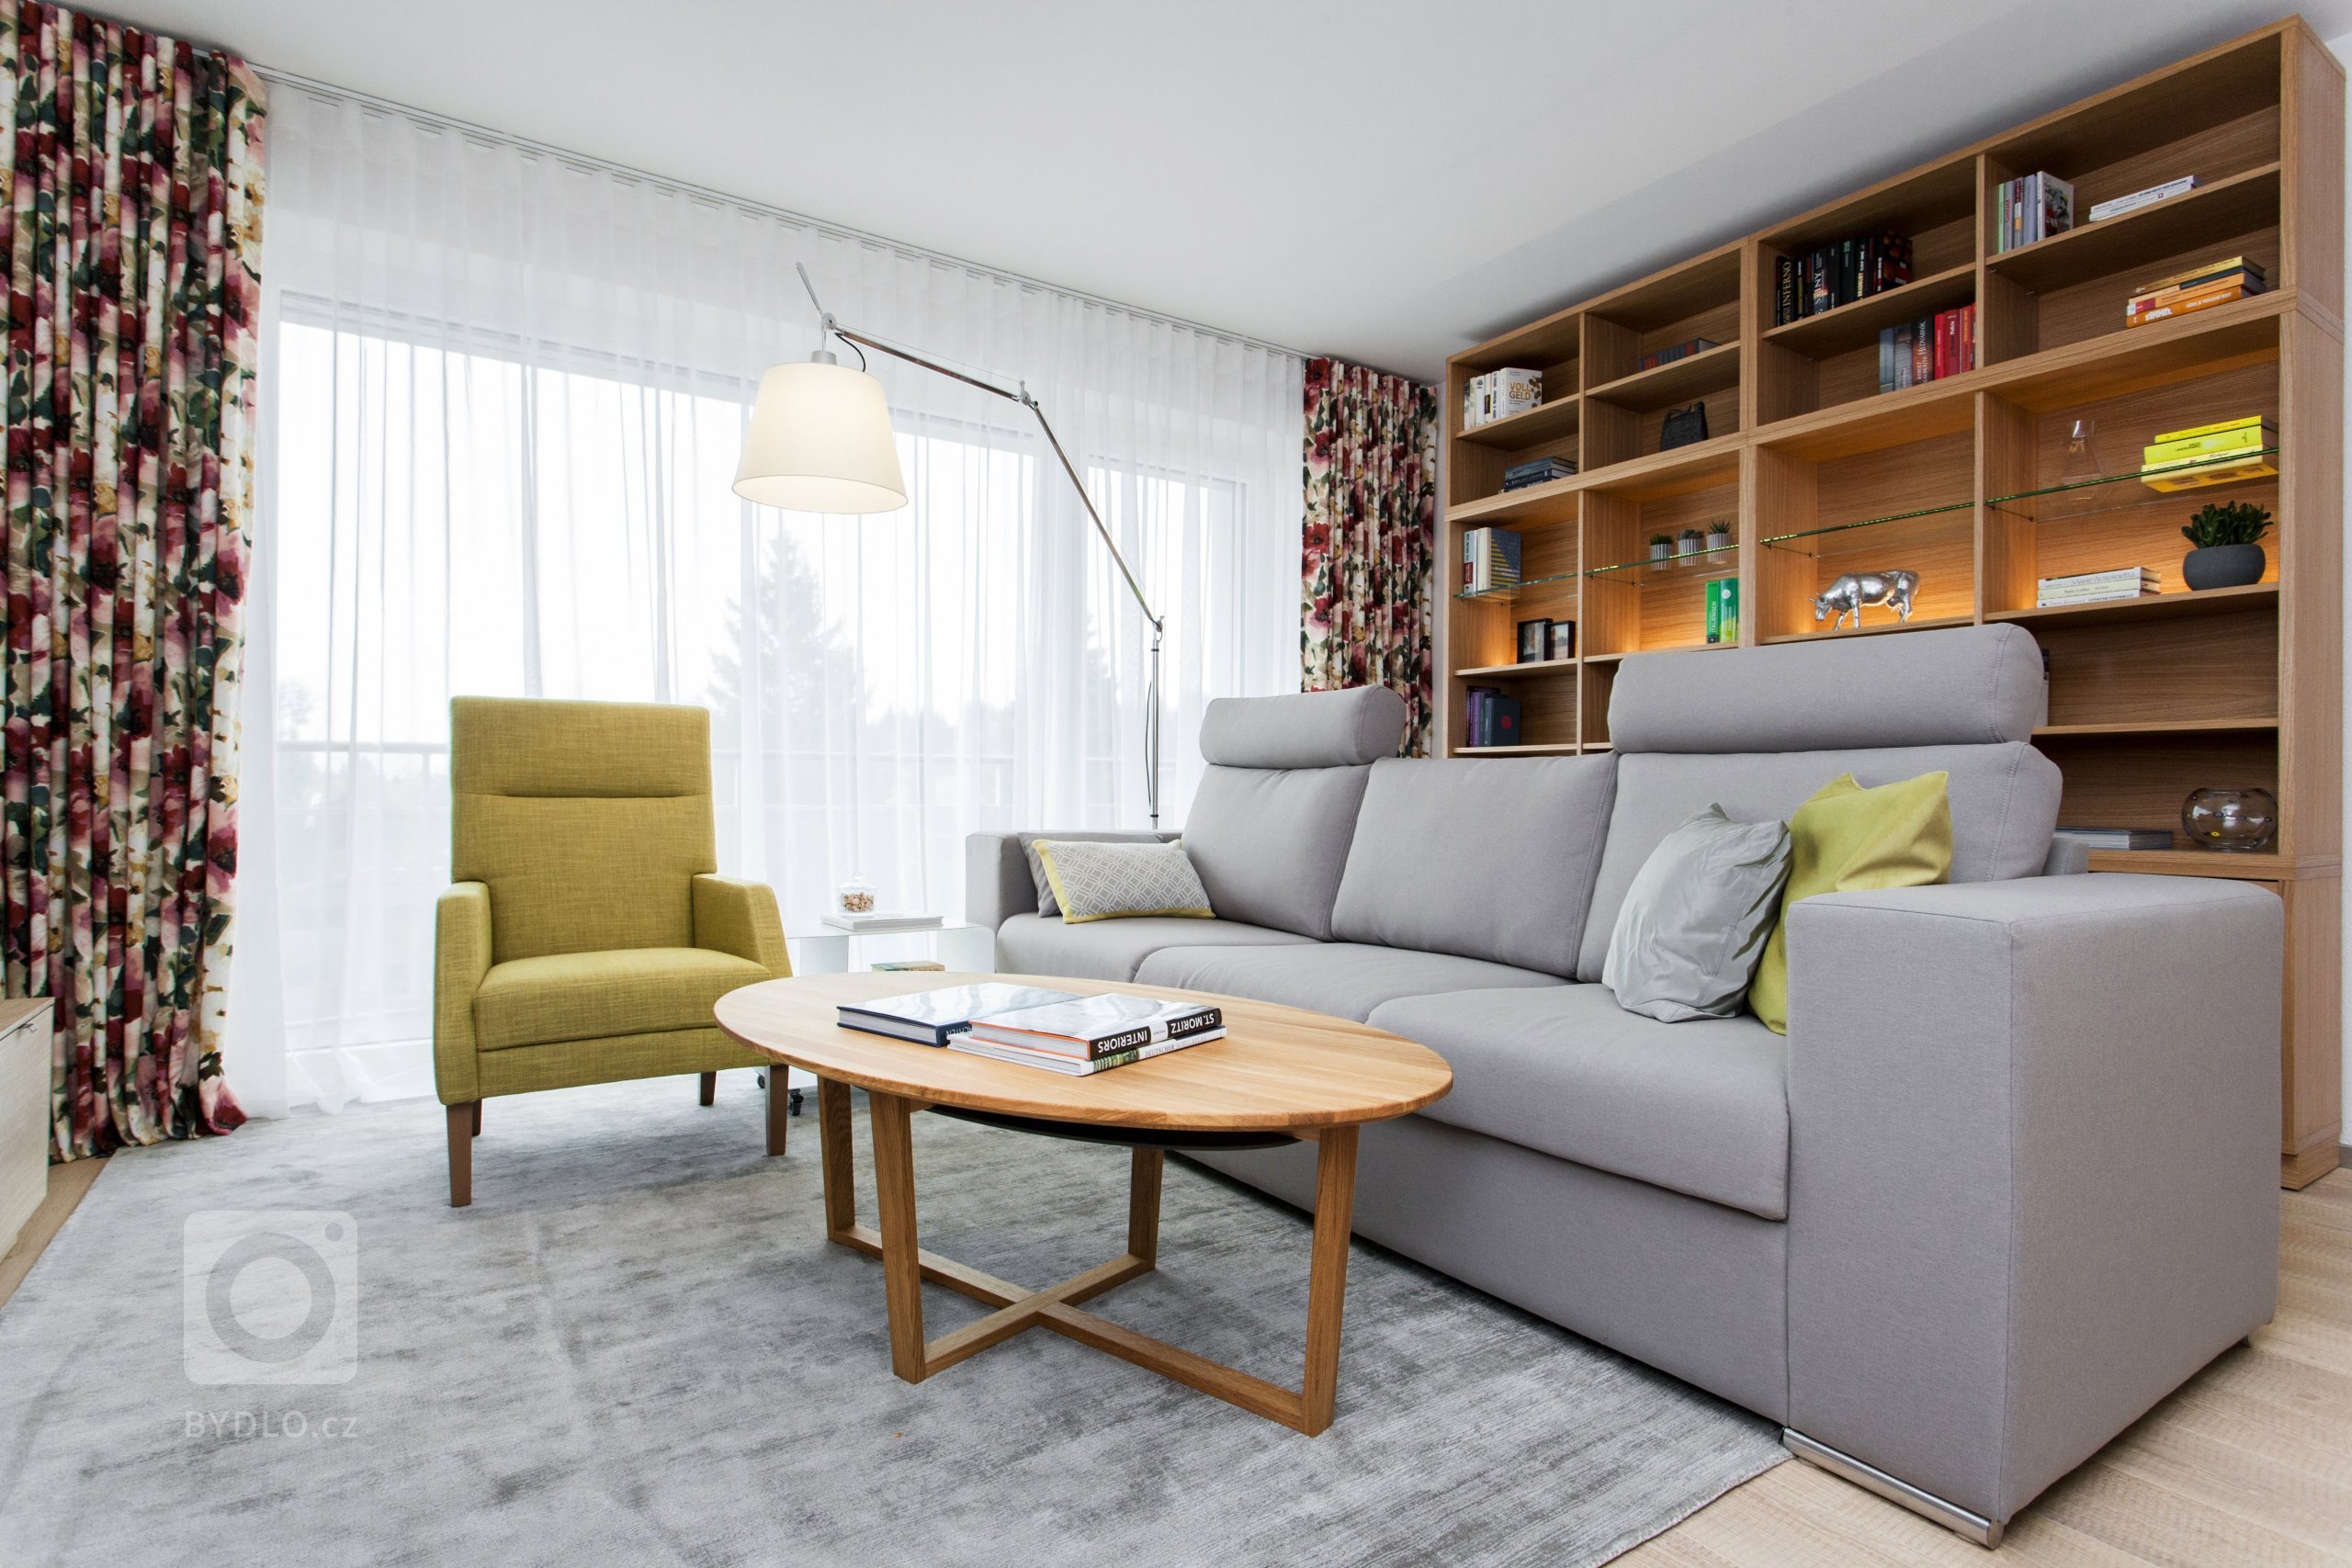 Byt 3+kk ve švýcarském Heidenu je součástí malého bytového komplexu zasazeného do krásného prostředí plného zeleně.&nbsp;V interiéru je kladen důraz na…